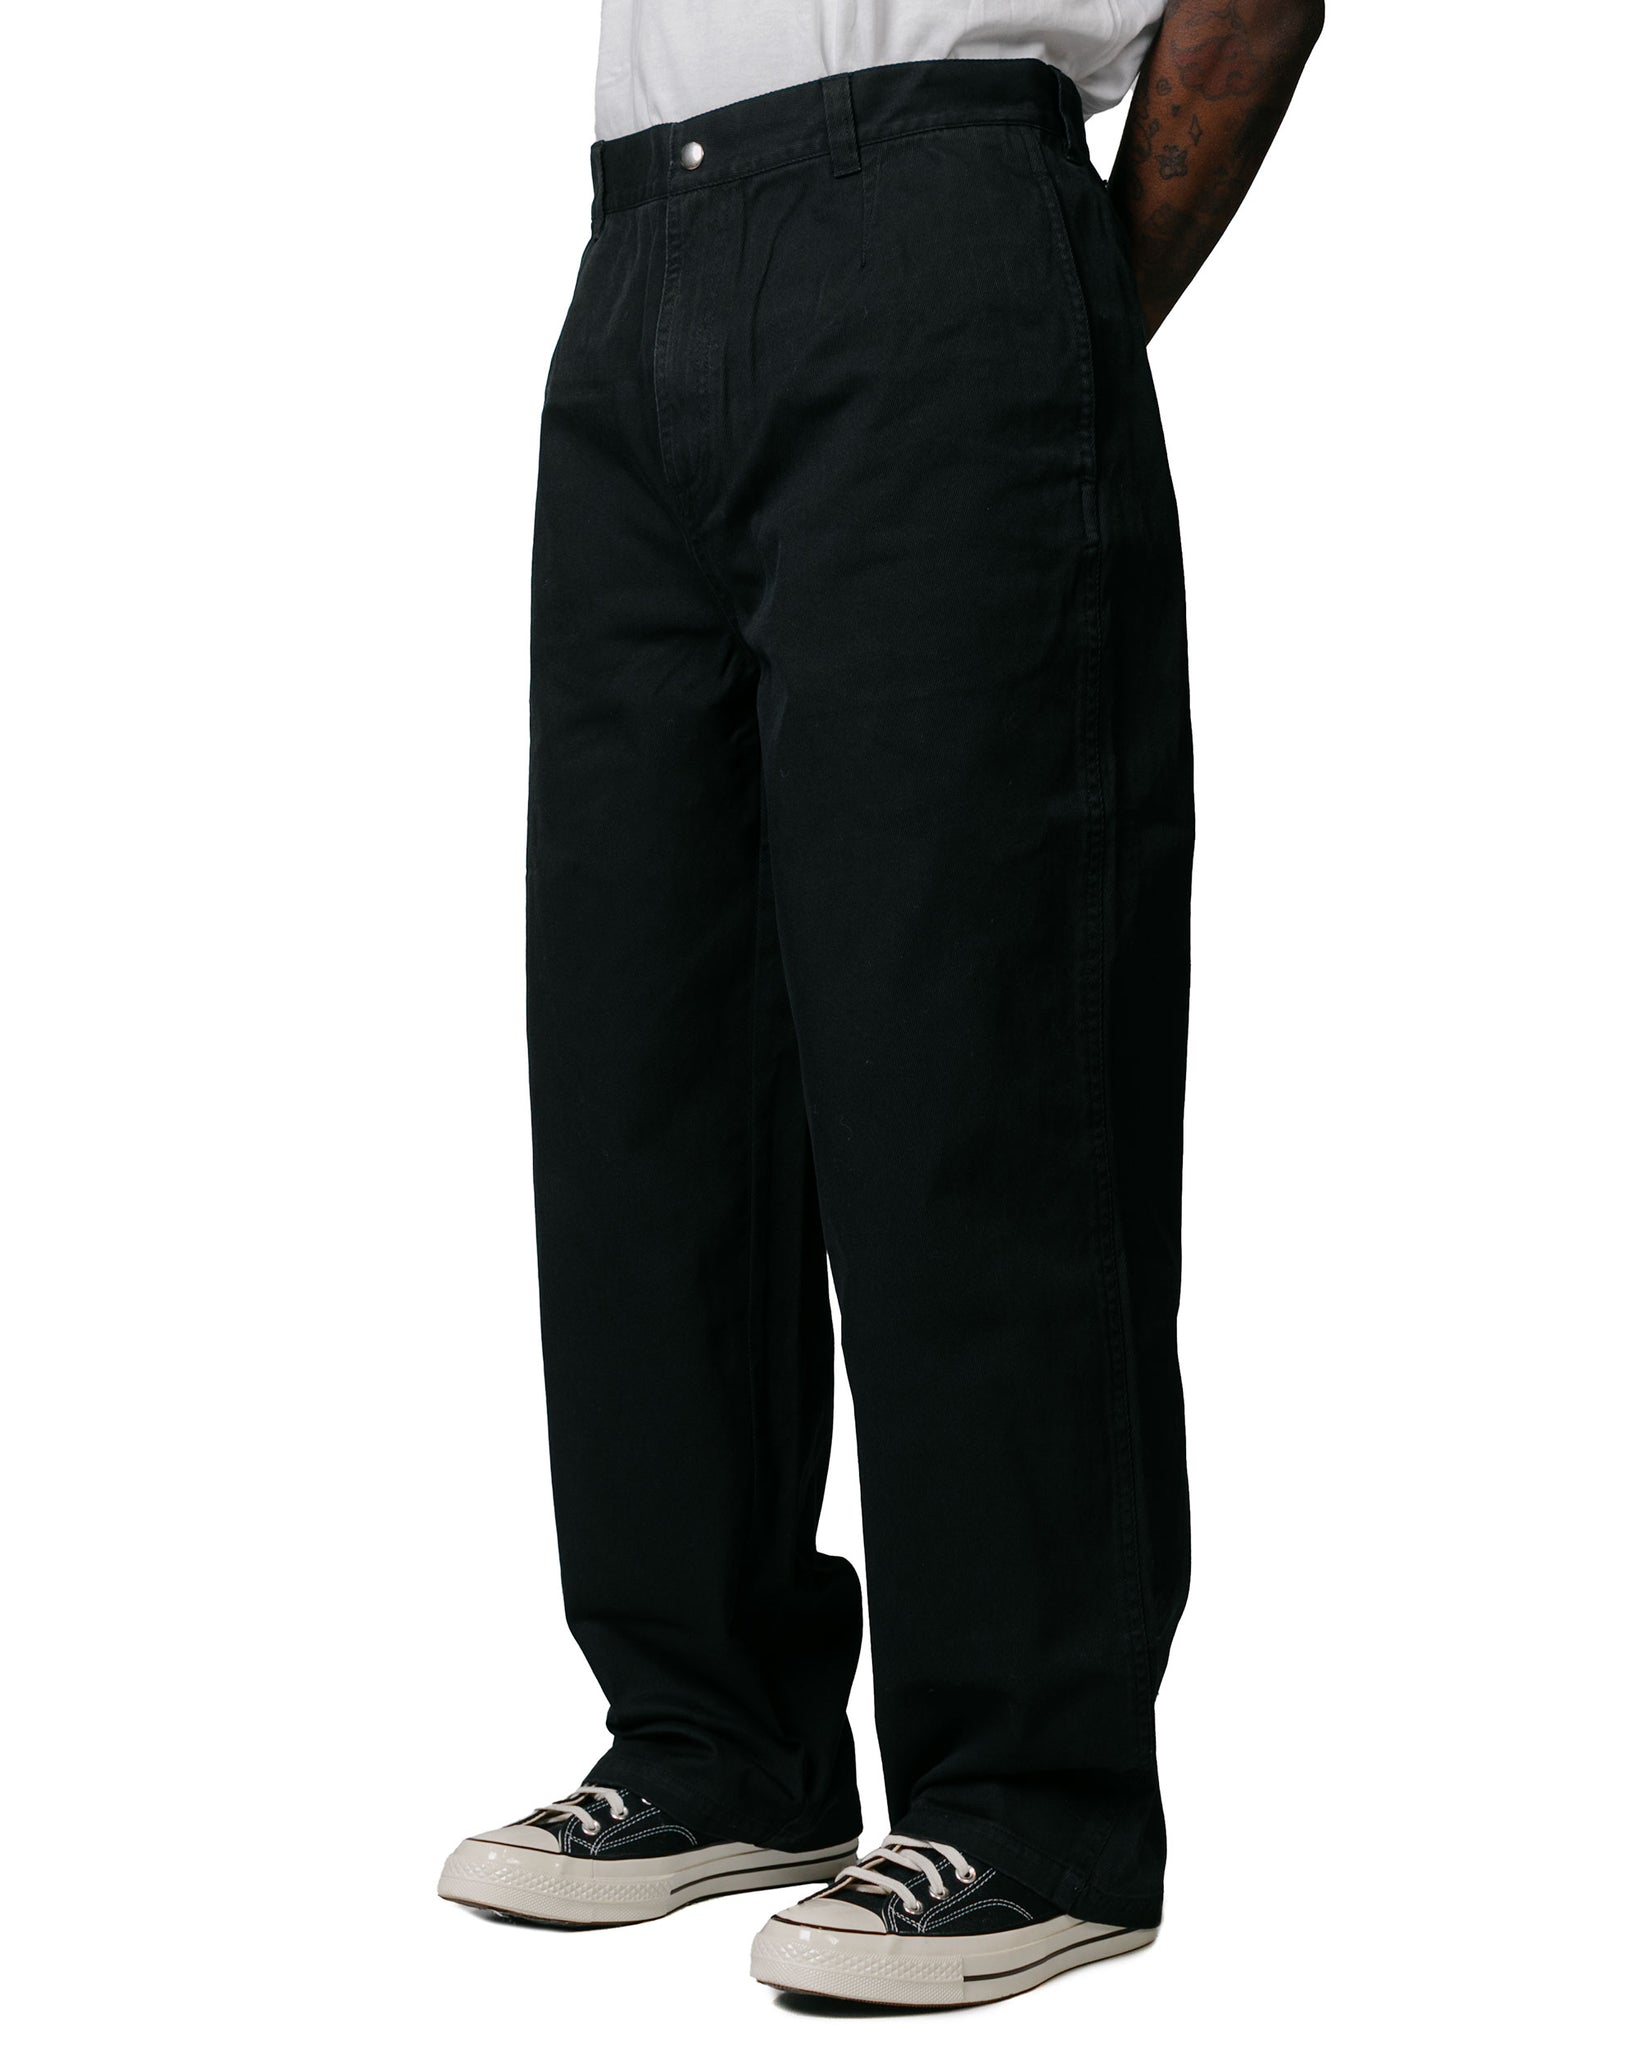 Stüssy Workgear Trouser Twill Black model front